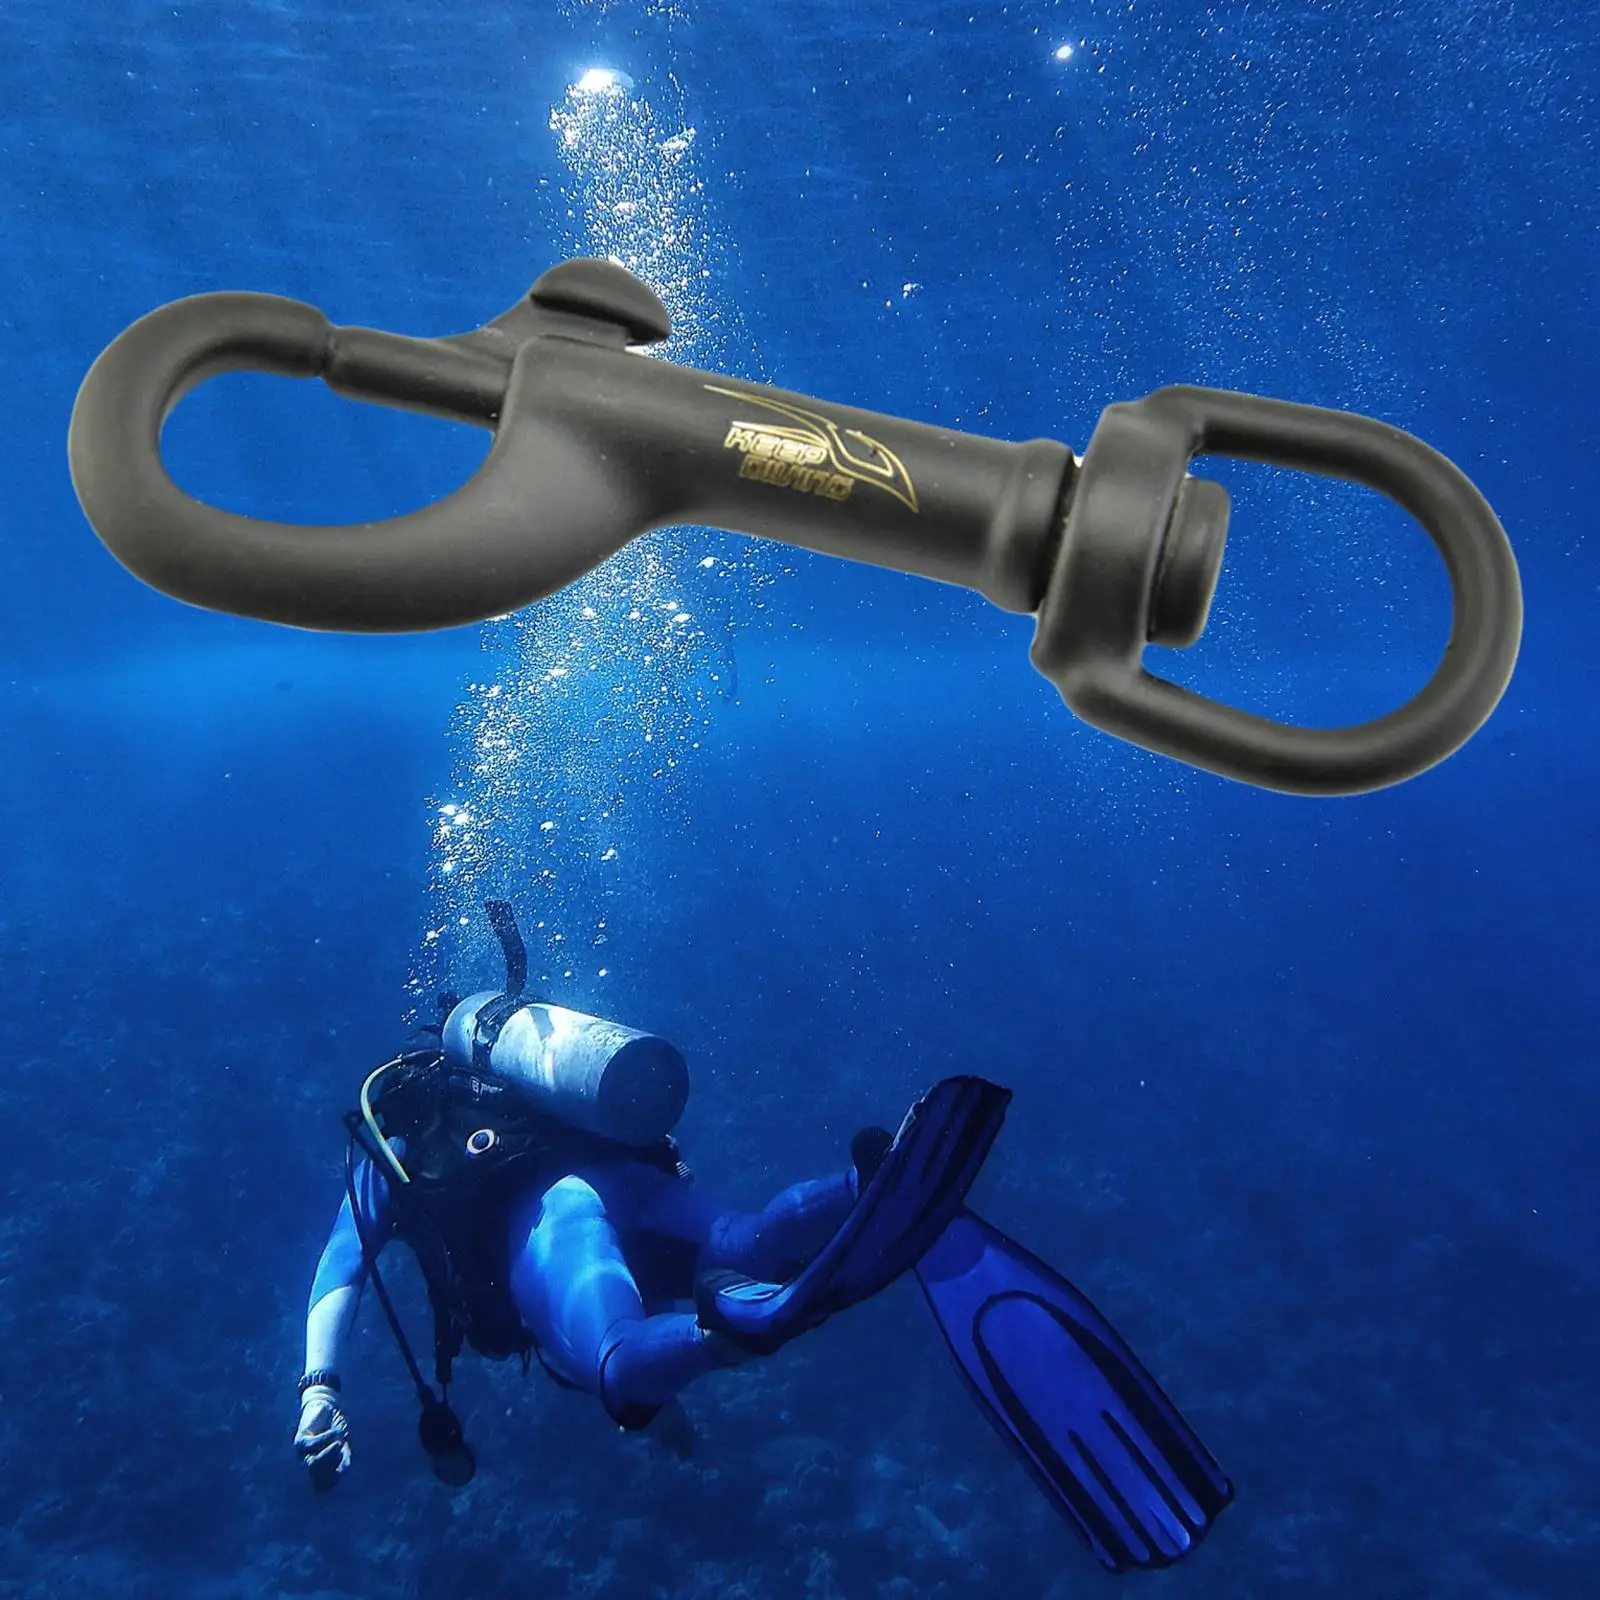  Stainless Steel Unterwasser Scuba Diving Single Bolt Snap Swivel Eye Gear